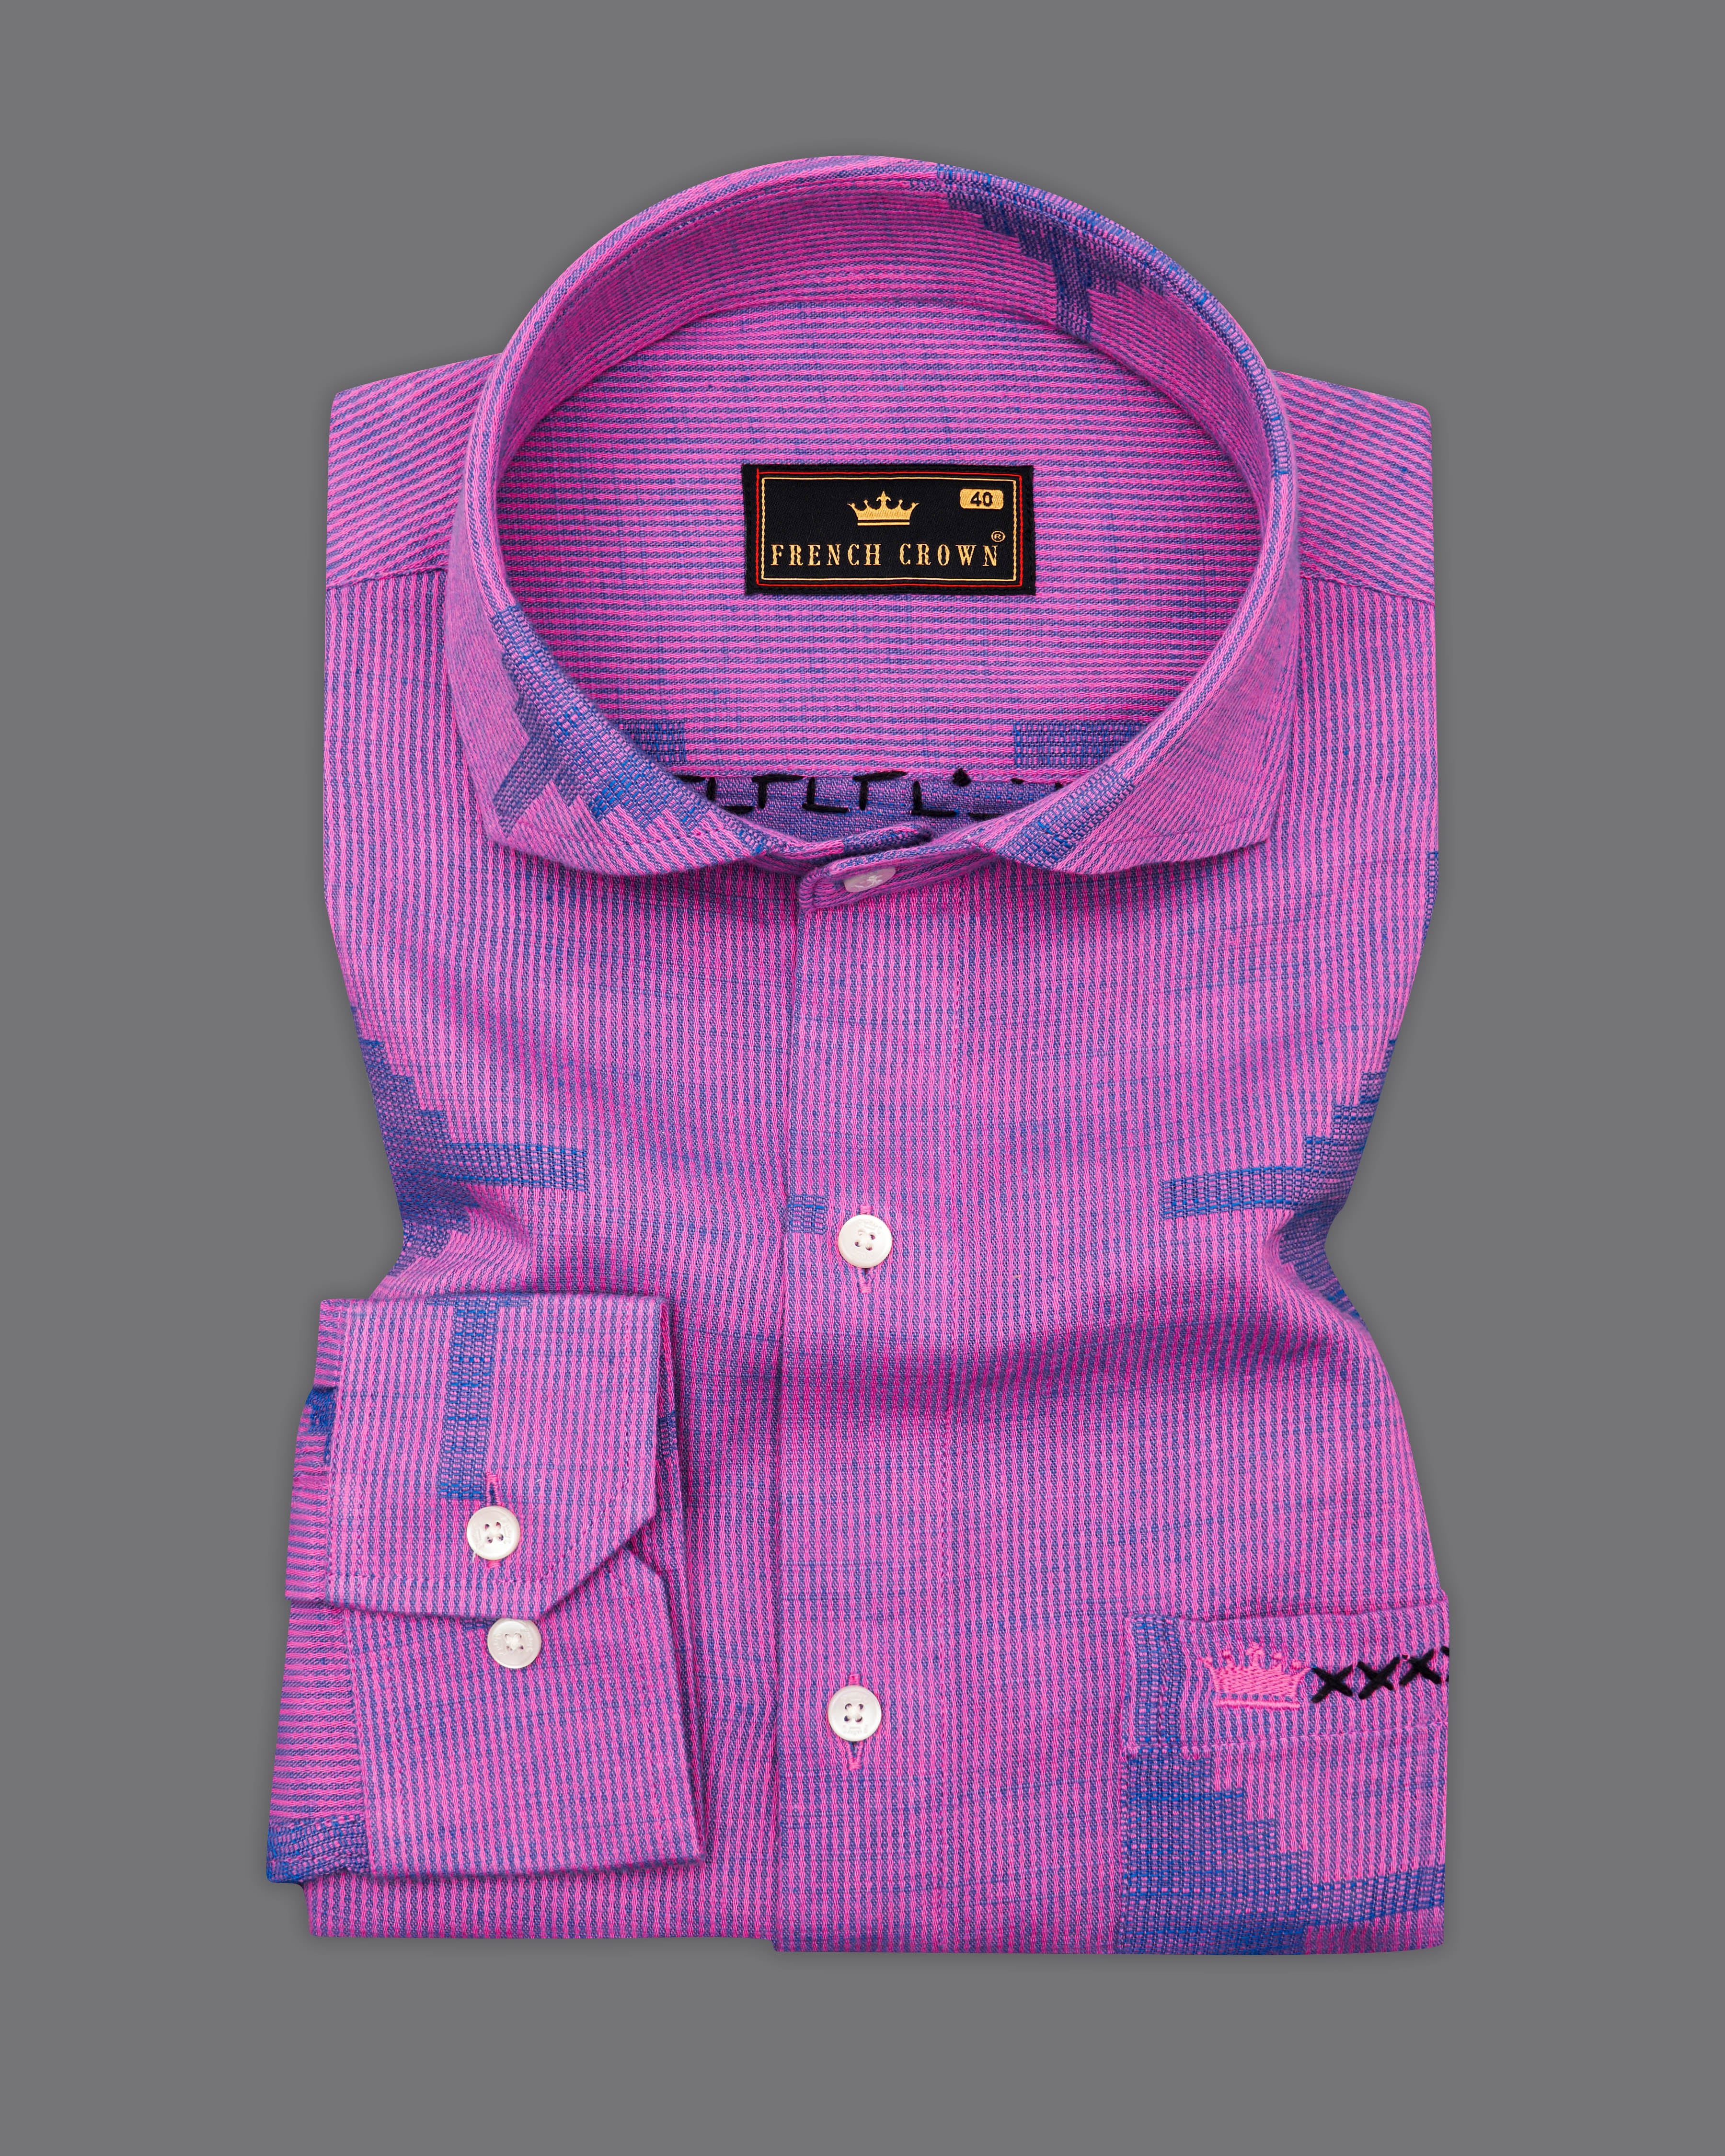 Fuchsia Violet with Cobalt Blue Hand Embroidered Dobby Premium Giza Cotton Shirt 6130-CA-E061-38, 6130-CA-E061-H-38, 6130-CA-E061-39, 6130-CA-E061-H-39, 6130-CA-E061-40, 6130-CA-E061-H-40, 6130-CA-E061-42, 6130-CA-E061-H-42, 6130-CA-E061-44, 6130-CA-E061-H-44, 6130-CA-E061-46, 6130-CA-E061-H-46, 6130-CA-E061-48, 6130-CA-E061-H-48, 6130-CA-E061-50, 6130-CA-E061-H-50, 6130-CA-E061-52, 6130-CA-E061-H-52